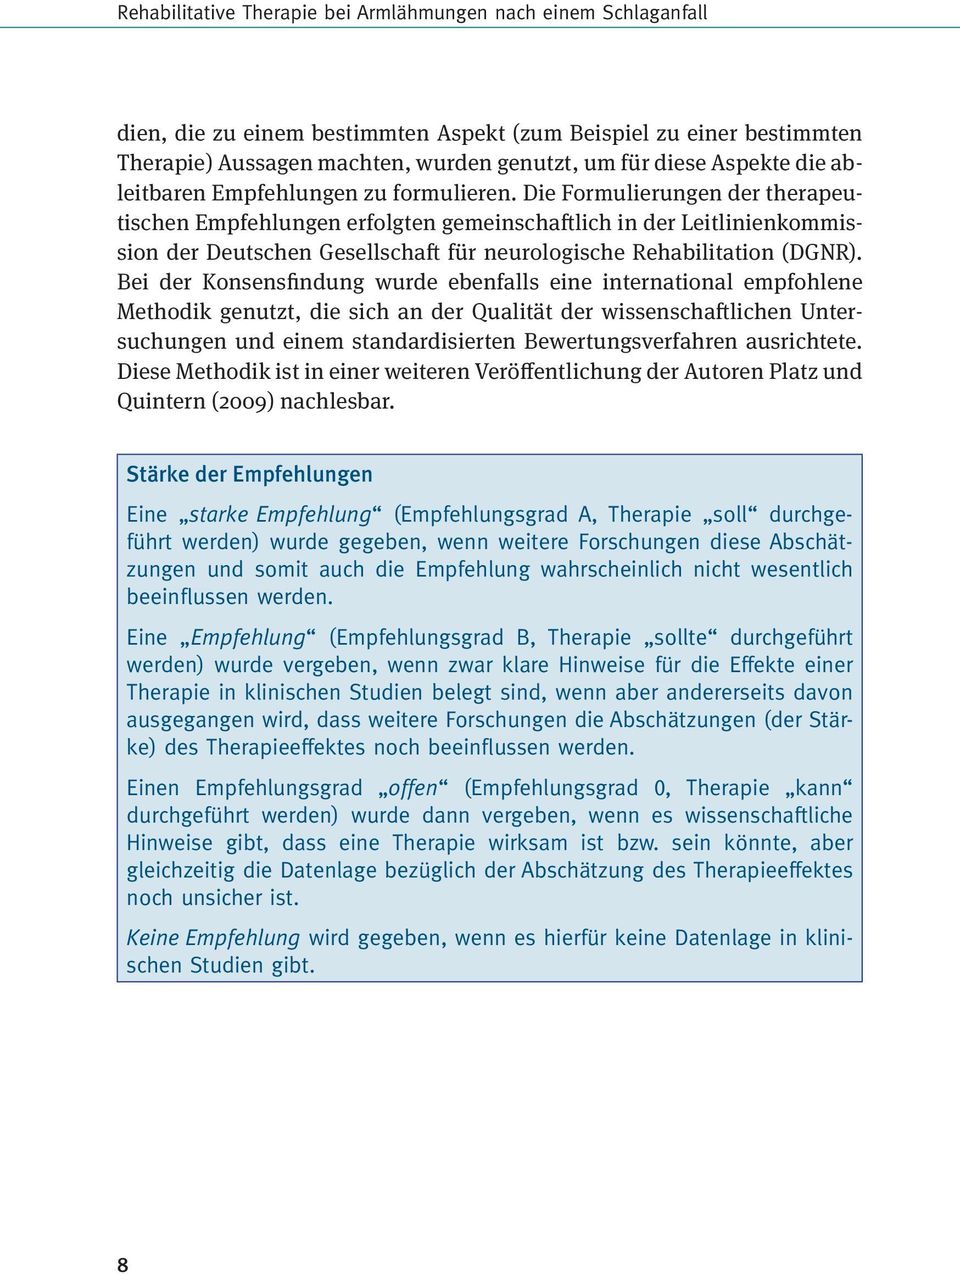 Die Formulierungen der therapeutischen Empfehlungen erfolgten gemeinschaftlich in der Leitlinienkommission der Deutschen Gesellschaft für neurologische Rehabilitation (DGNR).